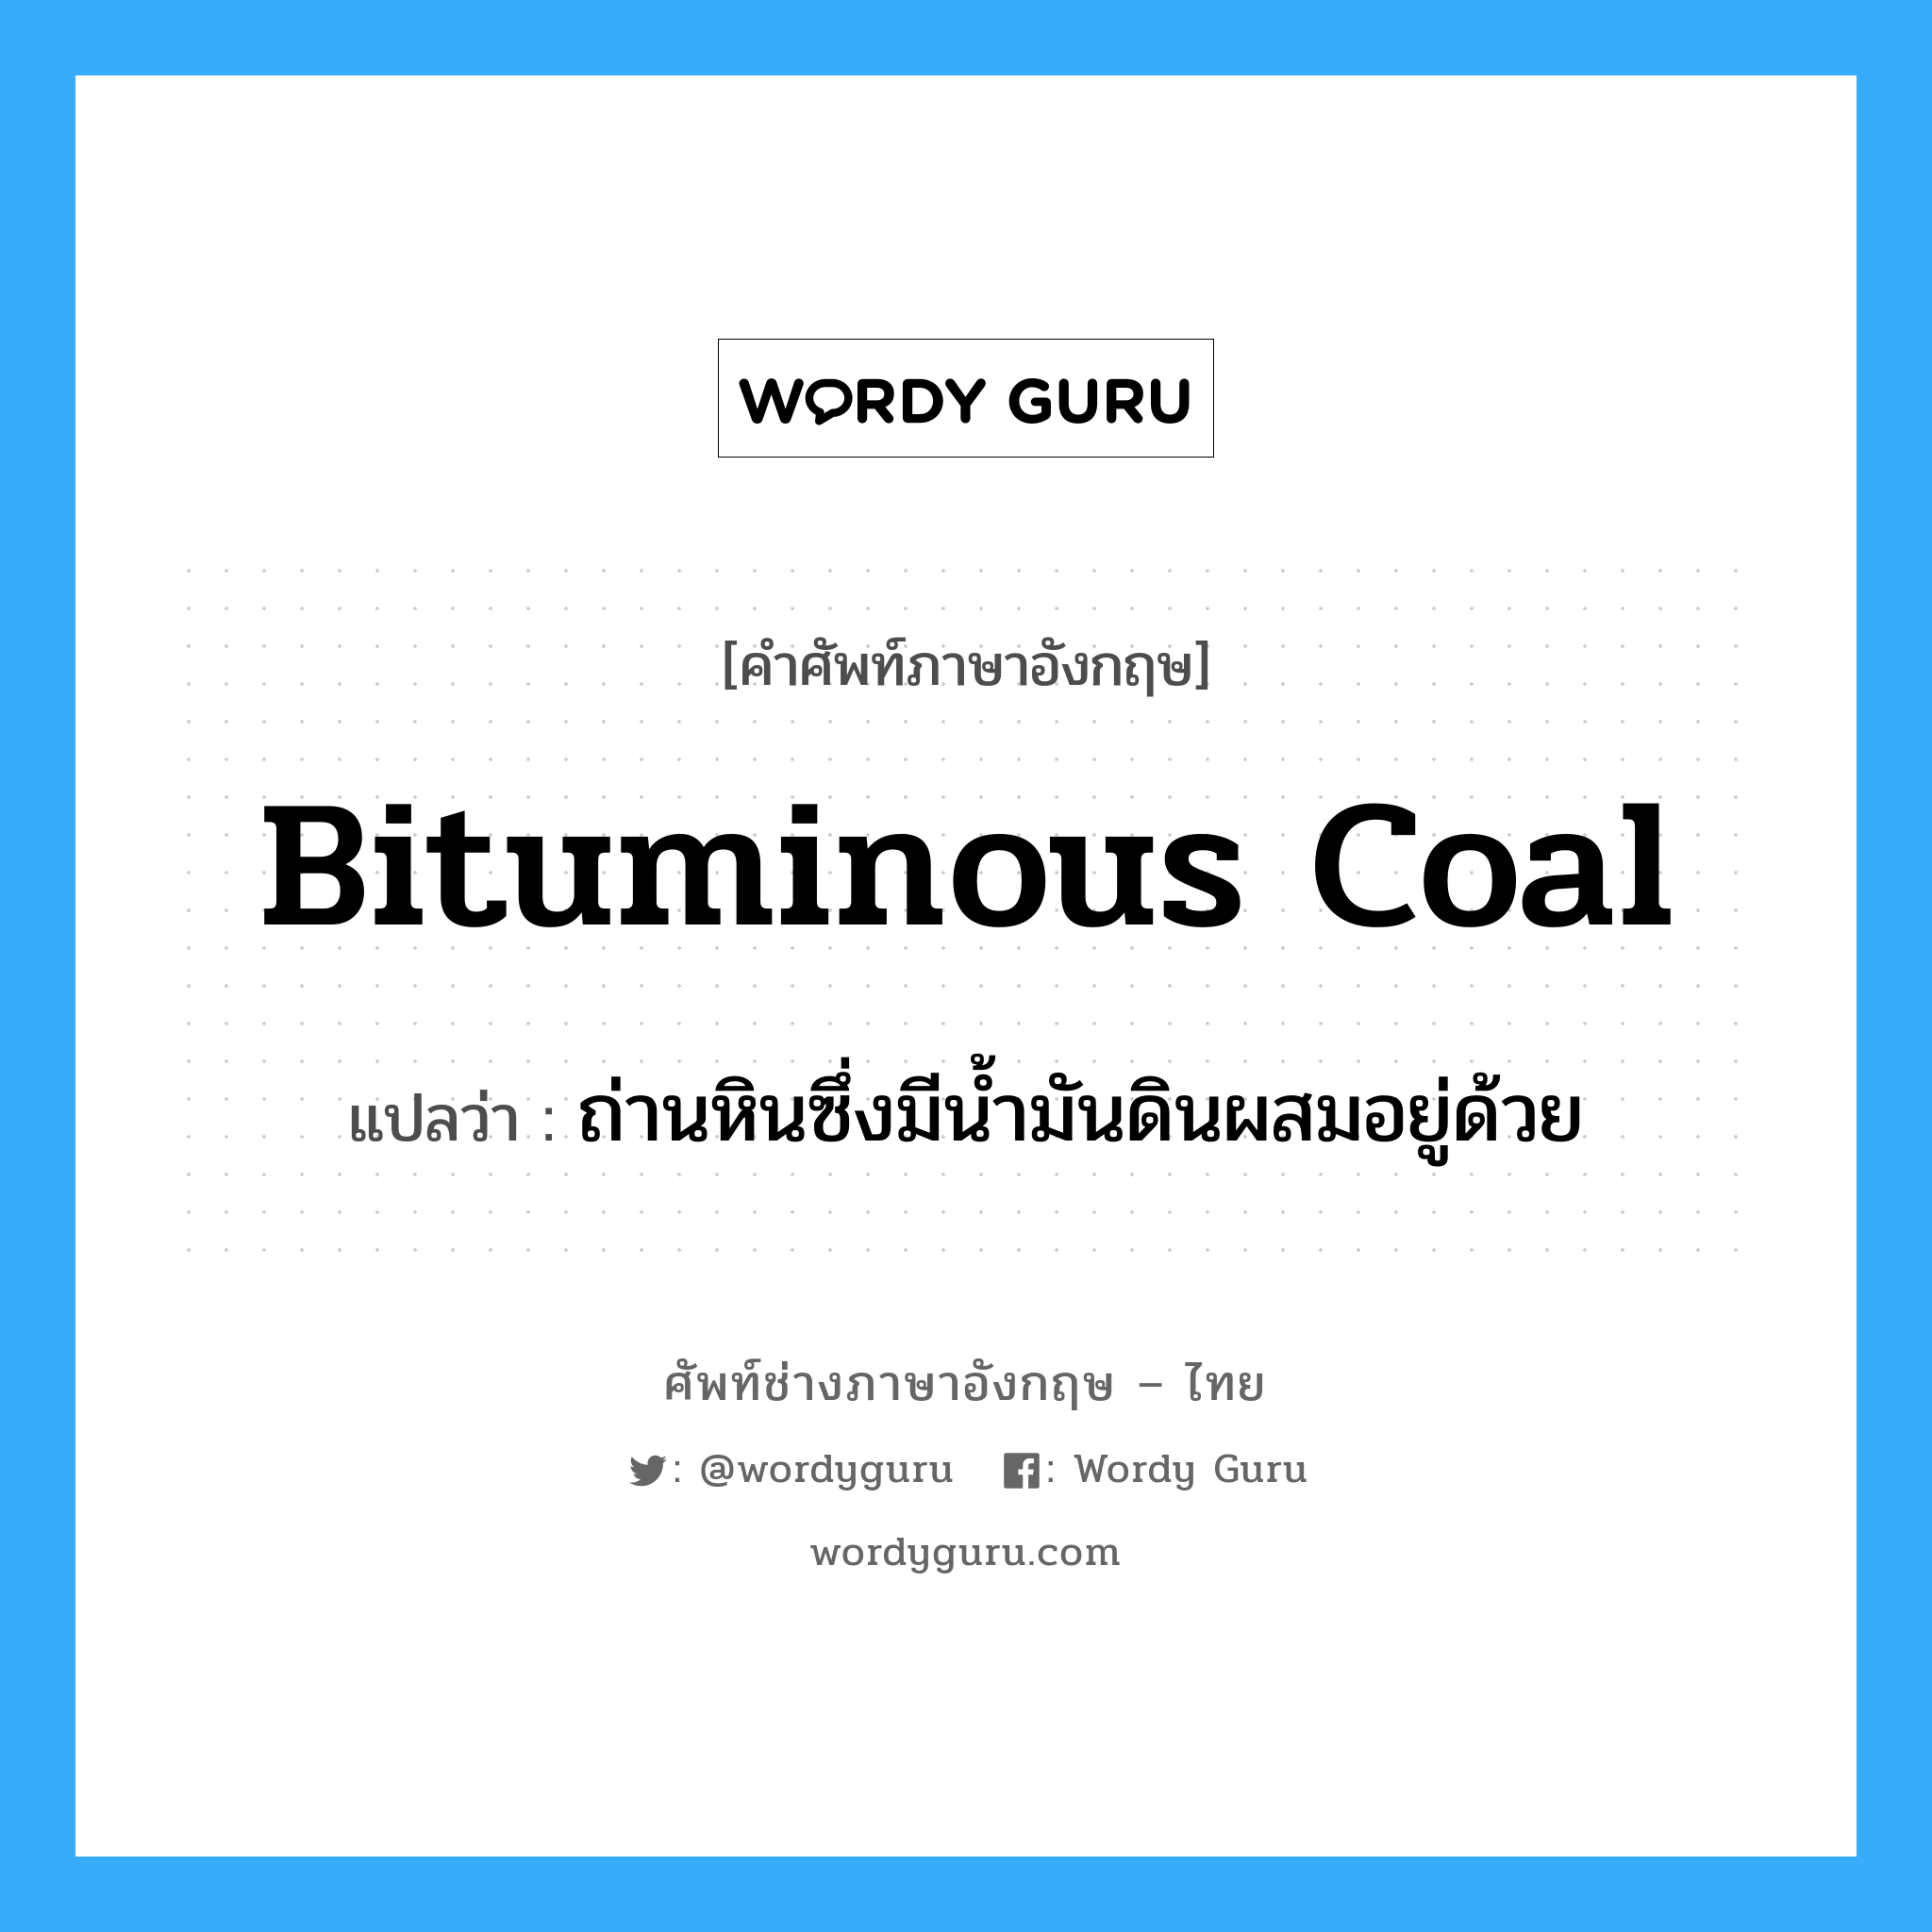 bituminous coal แปลว่า?, คำศัพท์ช่างภาษาอังกฤษ - ไทย bituminous coal คำศัพท์ภาษาอังกฤษ bituminous coal แปลว่า ถ่านหินซึ่งมีน้ำมันดินผสมอยู่ด้วย